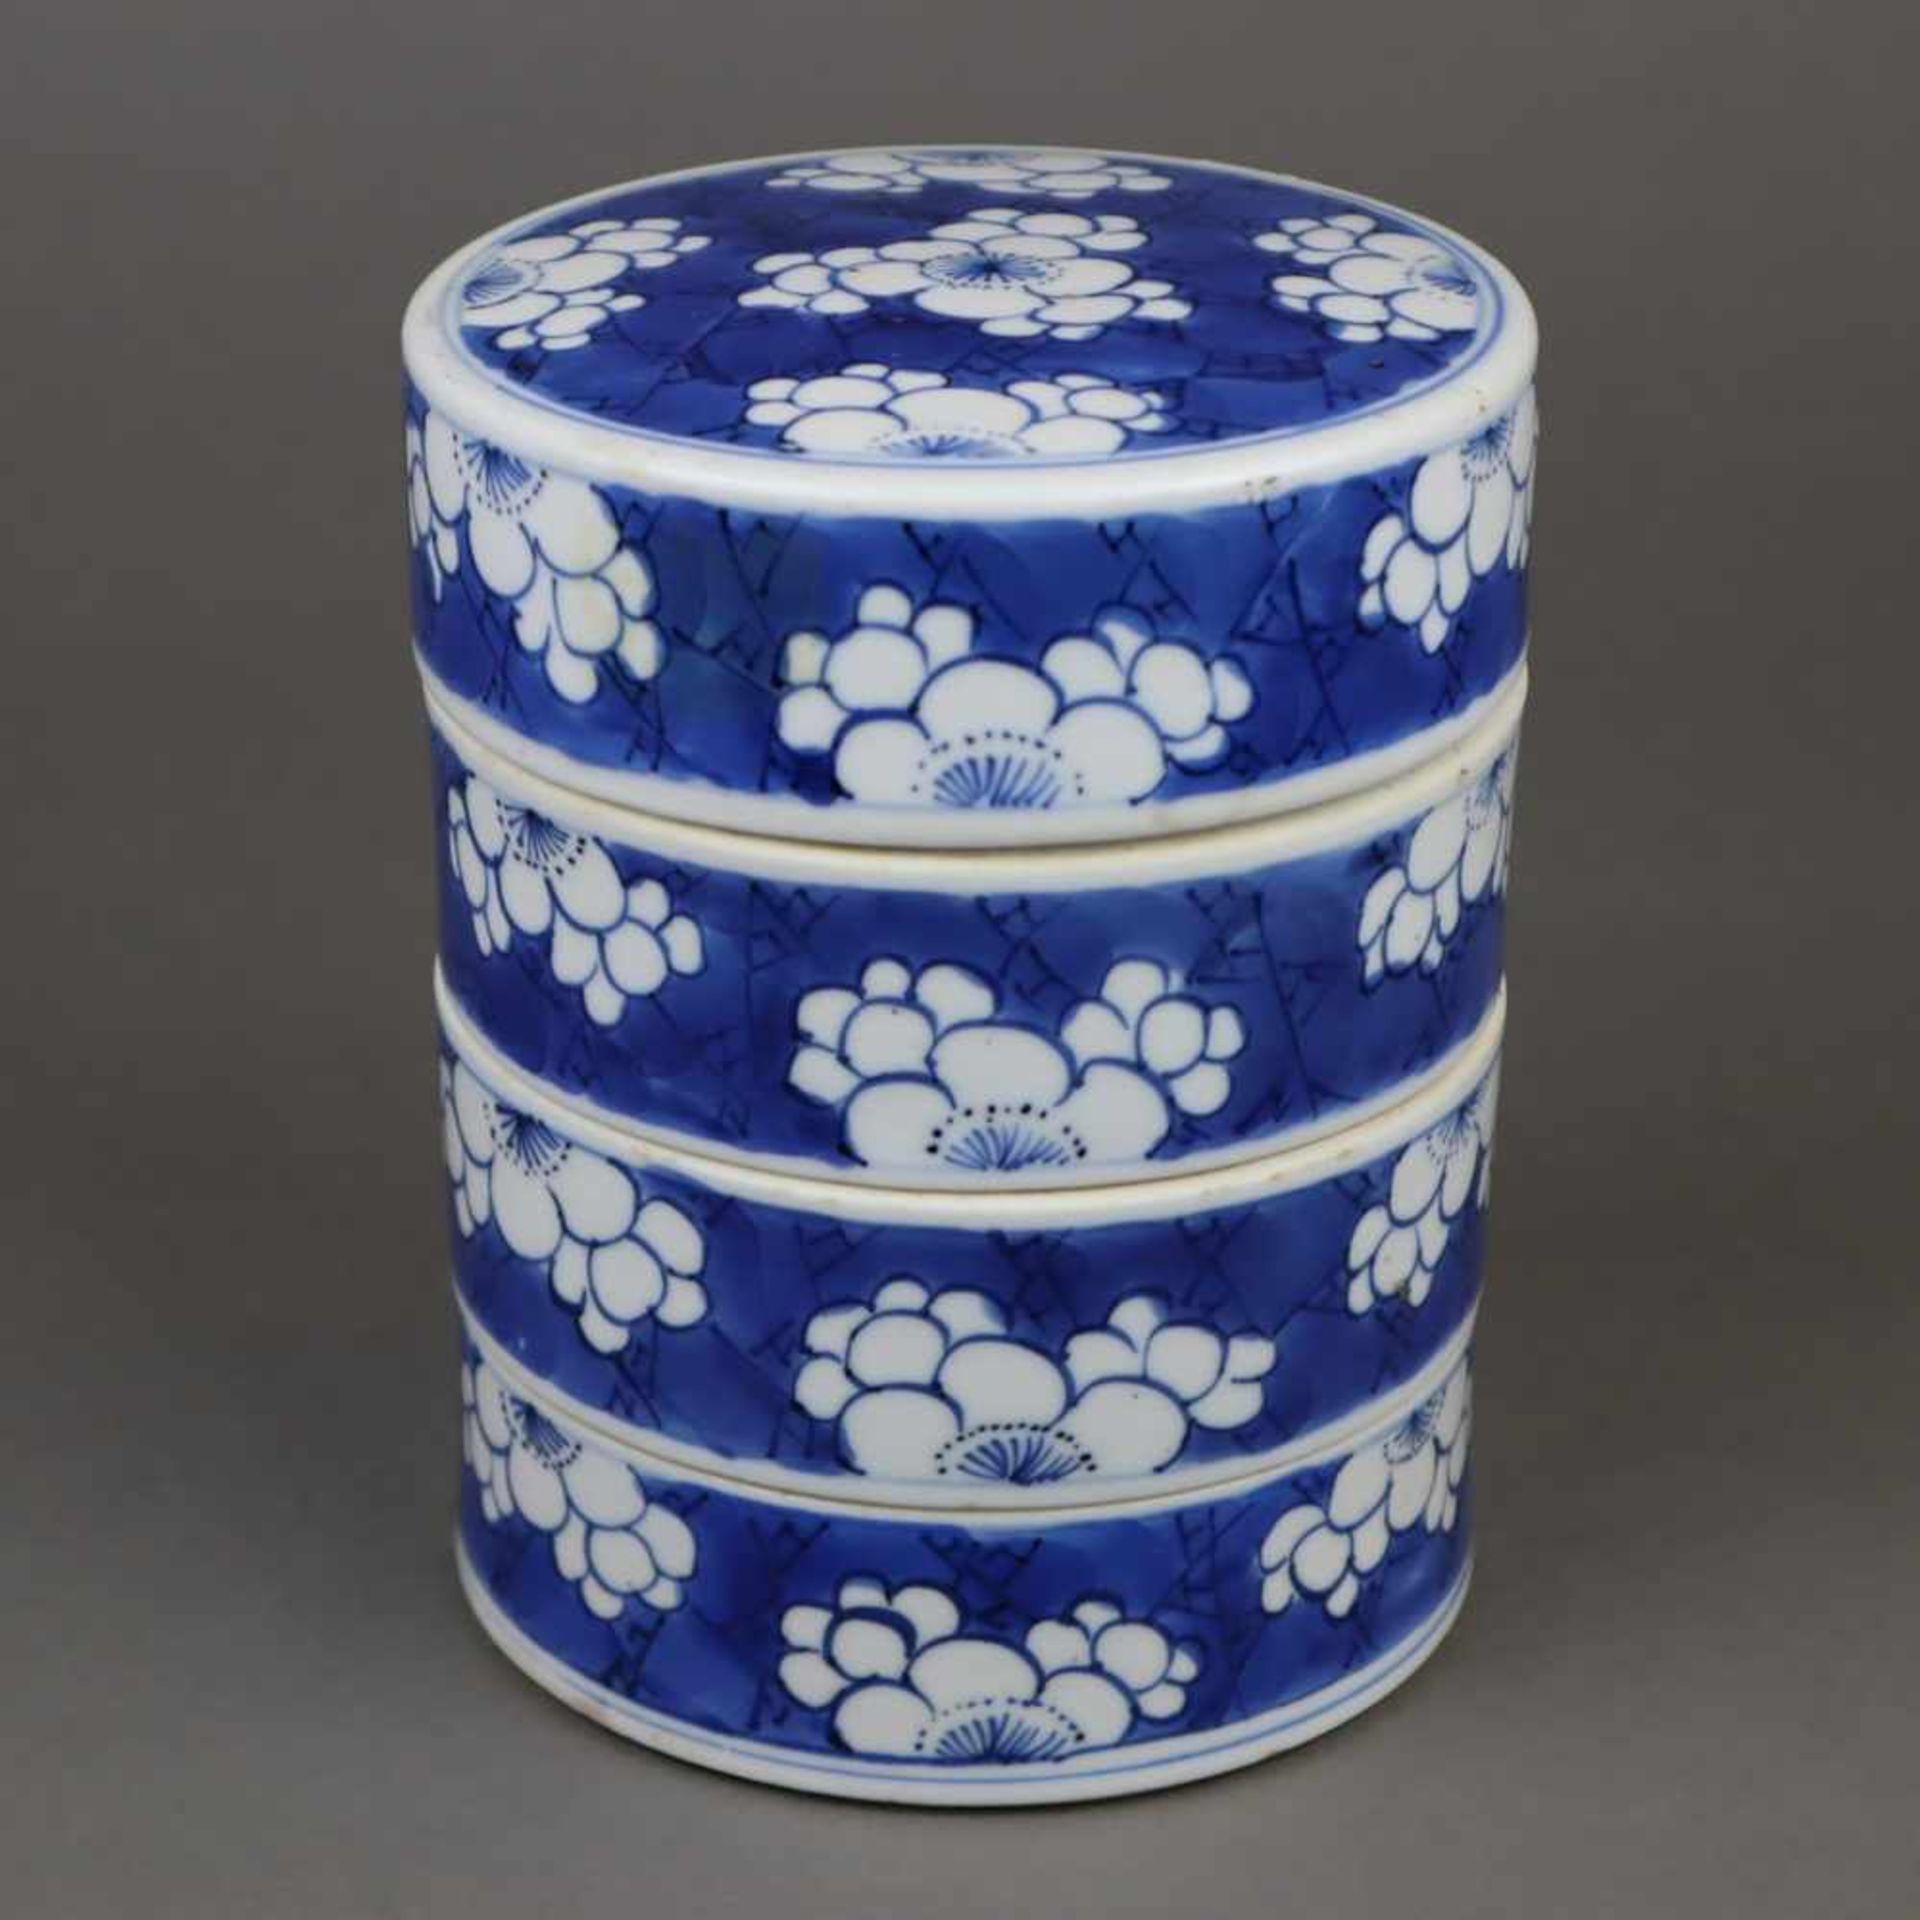 Stapeldose - China, Porzellan, unterglasurblauer Blumendekor, vier ineinander gestapelte Schalen mit